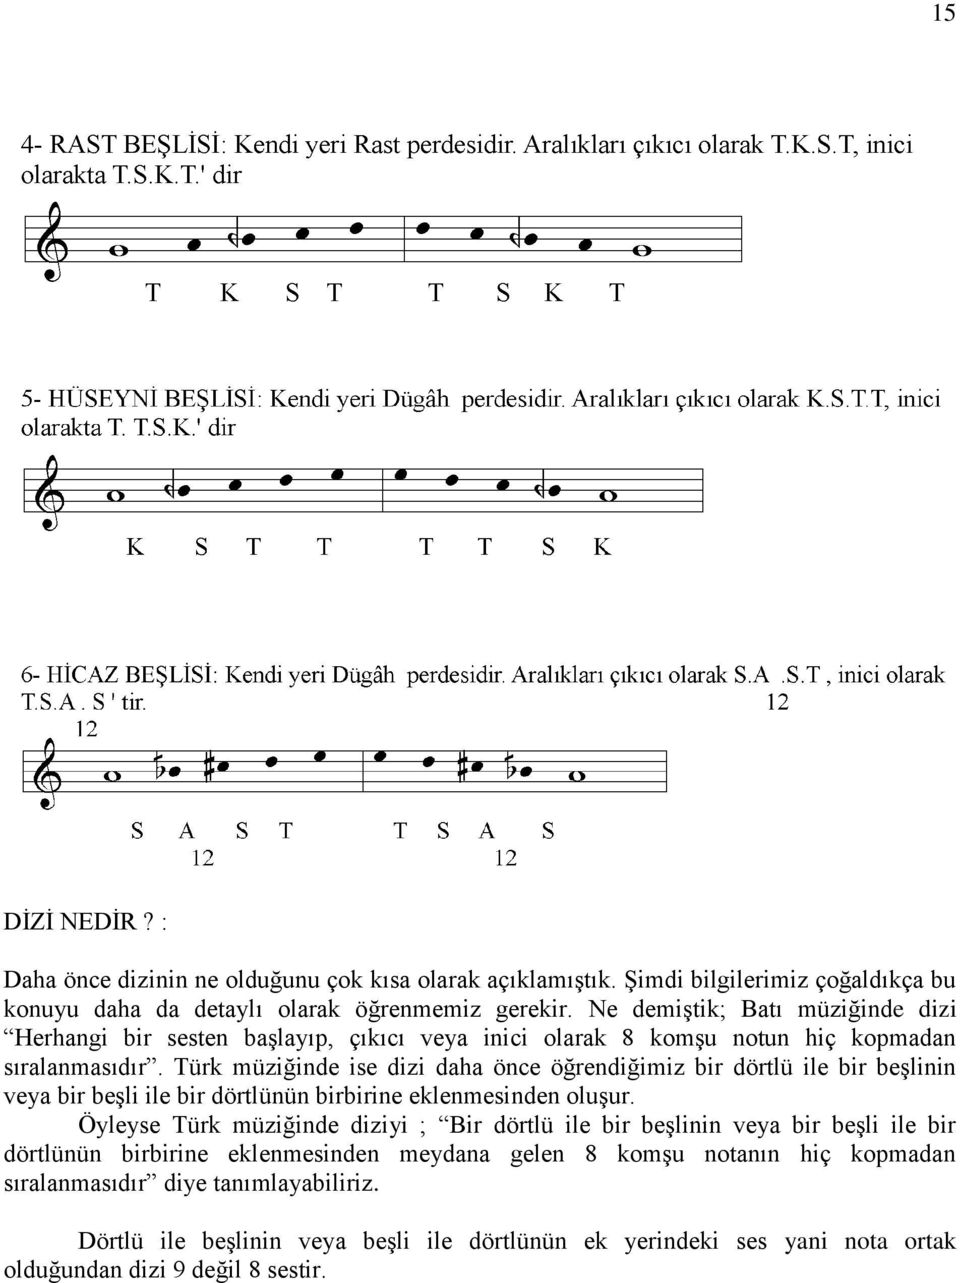 Türk müziğinde ise dizi daha önce öğrendiğimiz bir dörtlü ile bir beşlinin veya bir beşli ile bir dörtlünün birbirine eklenmesinden oluşur.